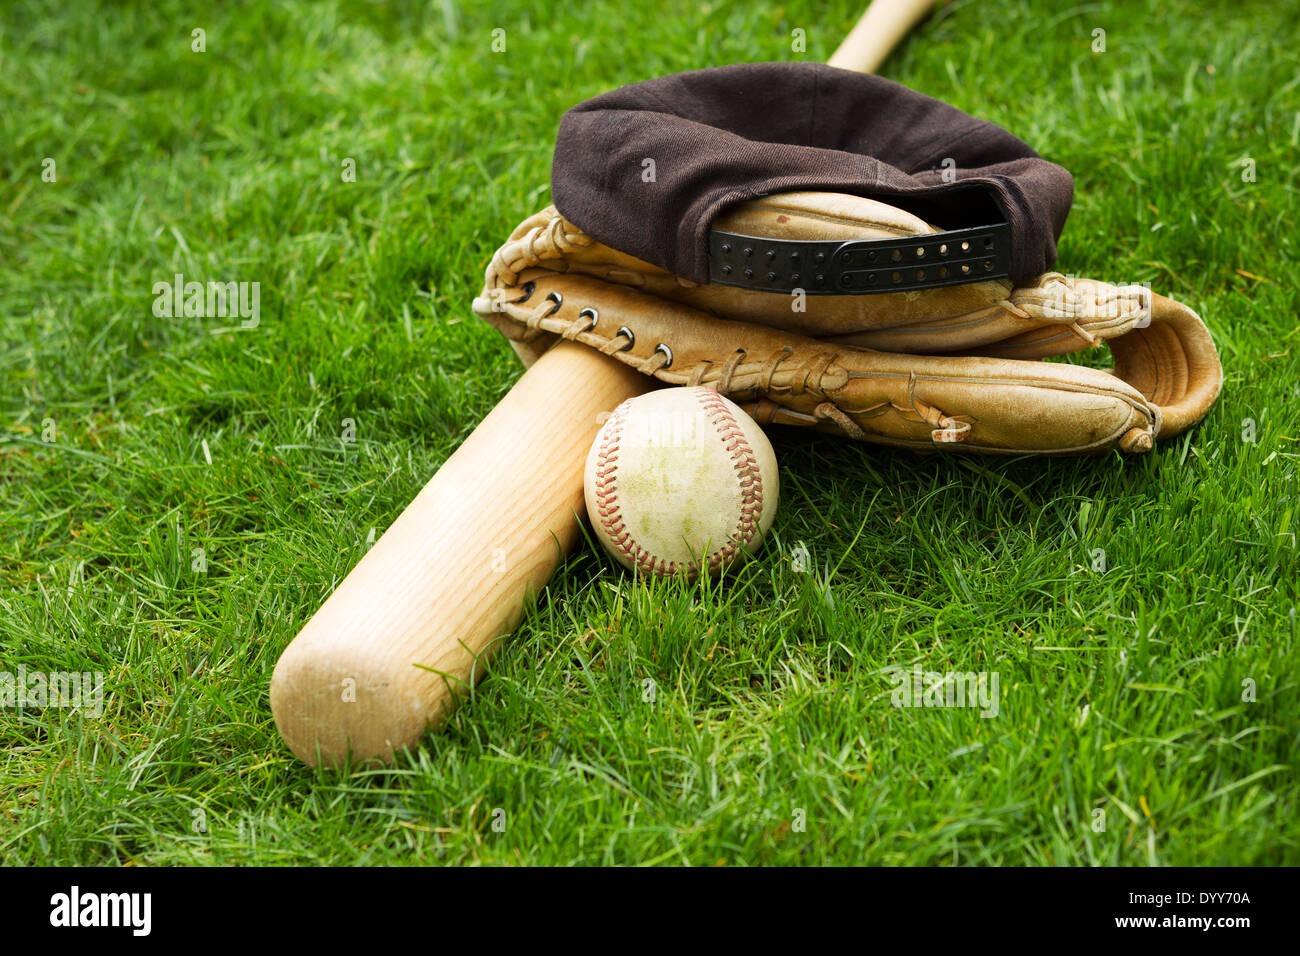 Foto orizzontale di vecchi baseball bat, cappuccio e guanto sul campo in erba naturale Foto Stock